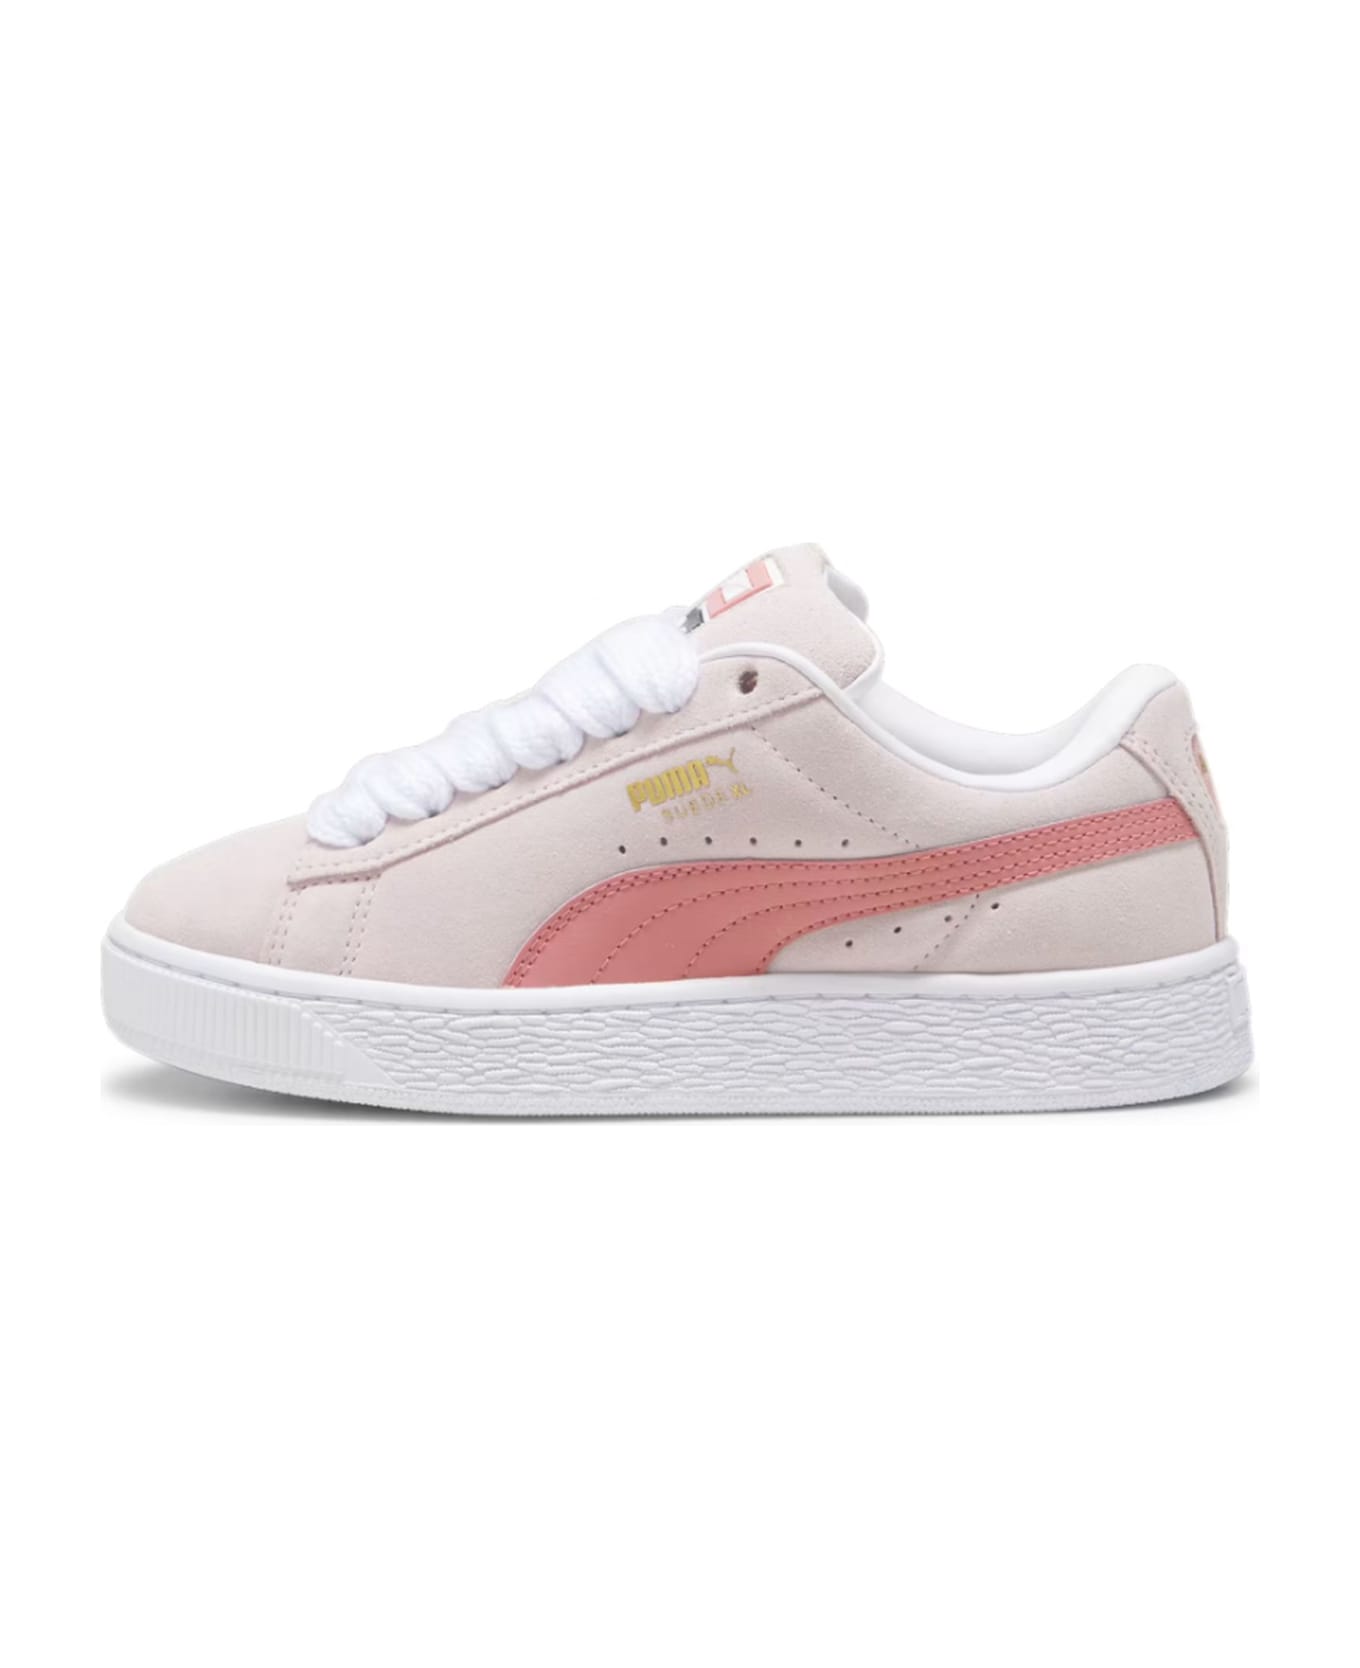 Puma Sneakers Pink - Pink シューズ